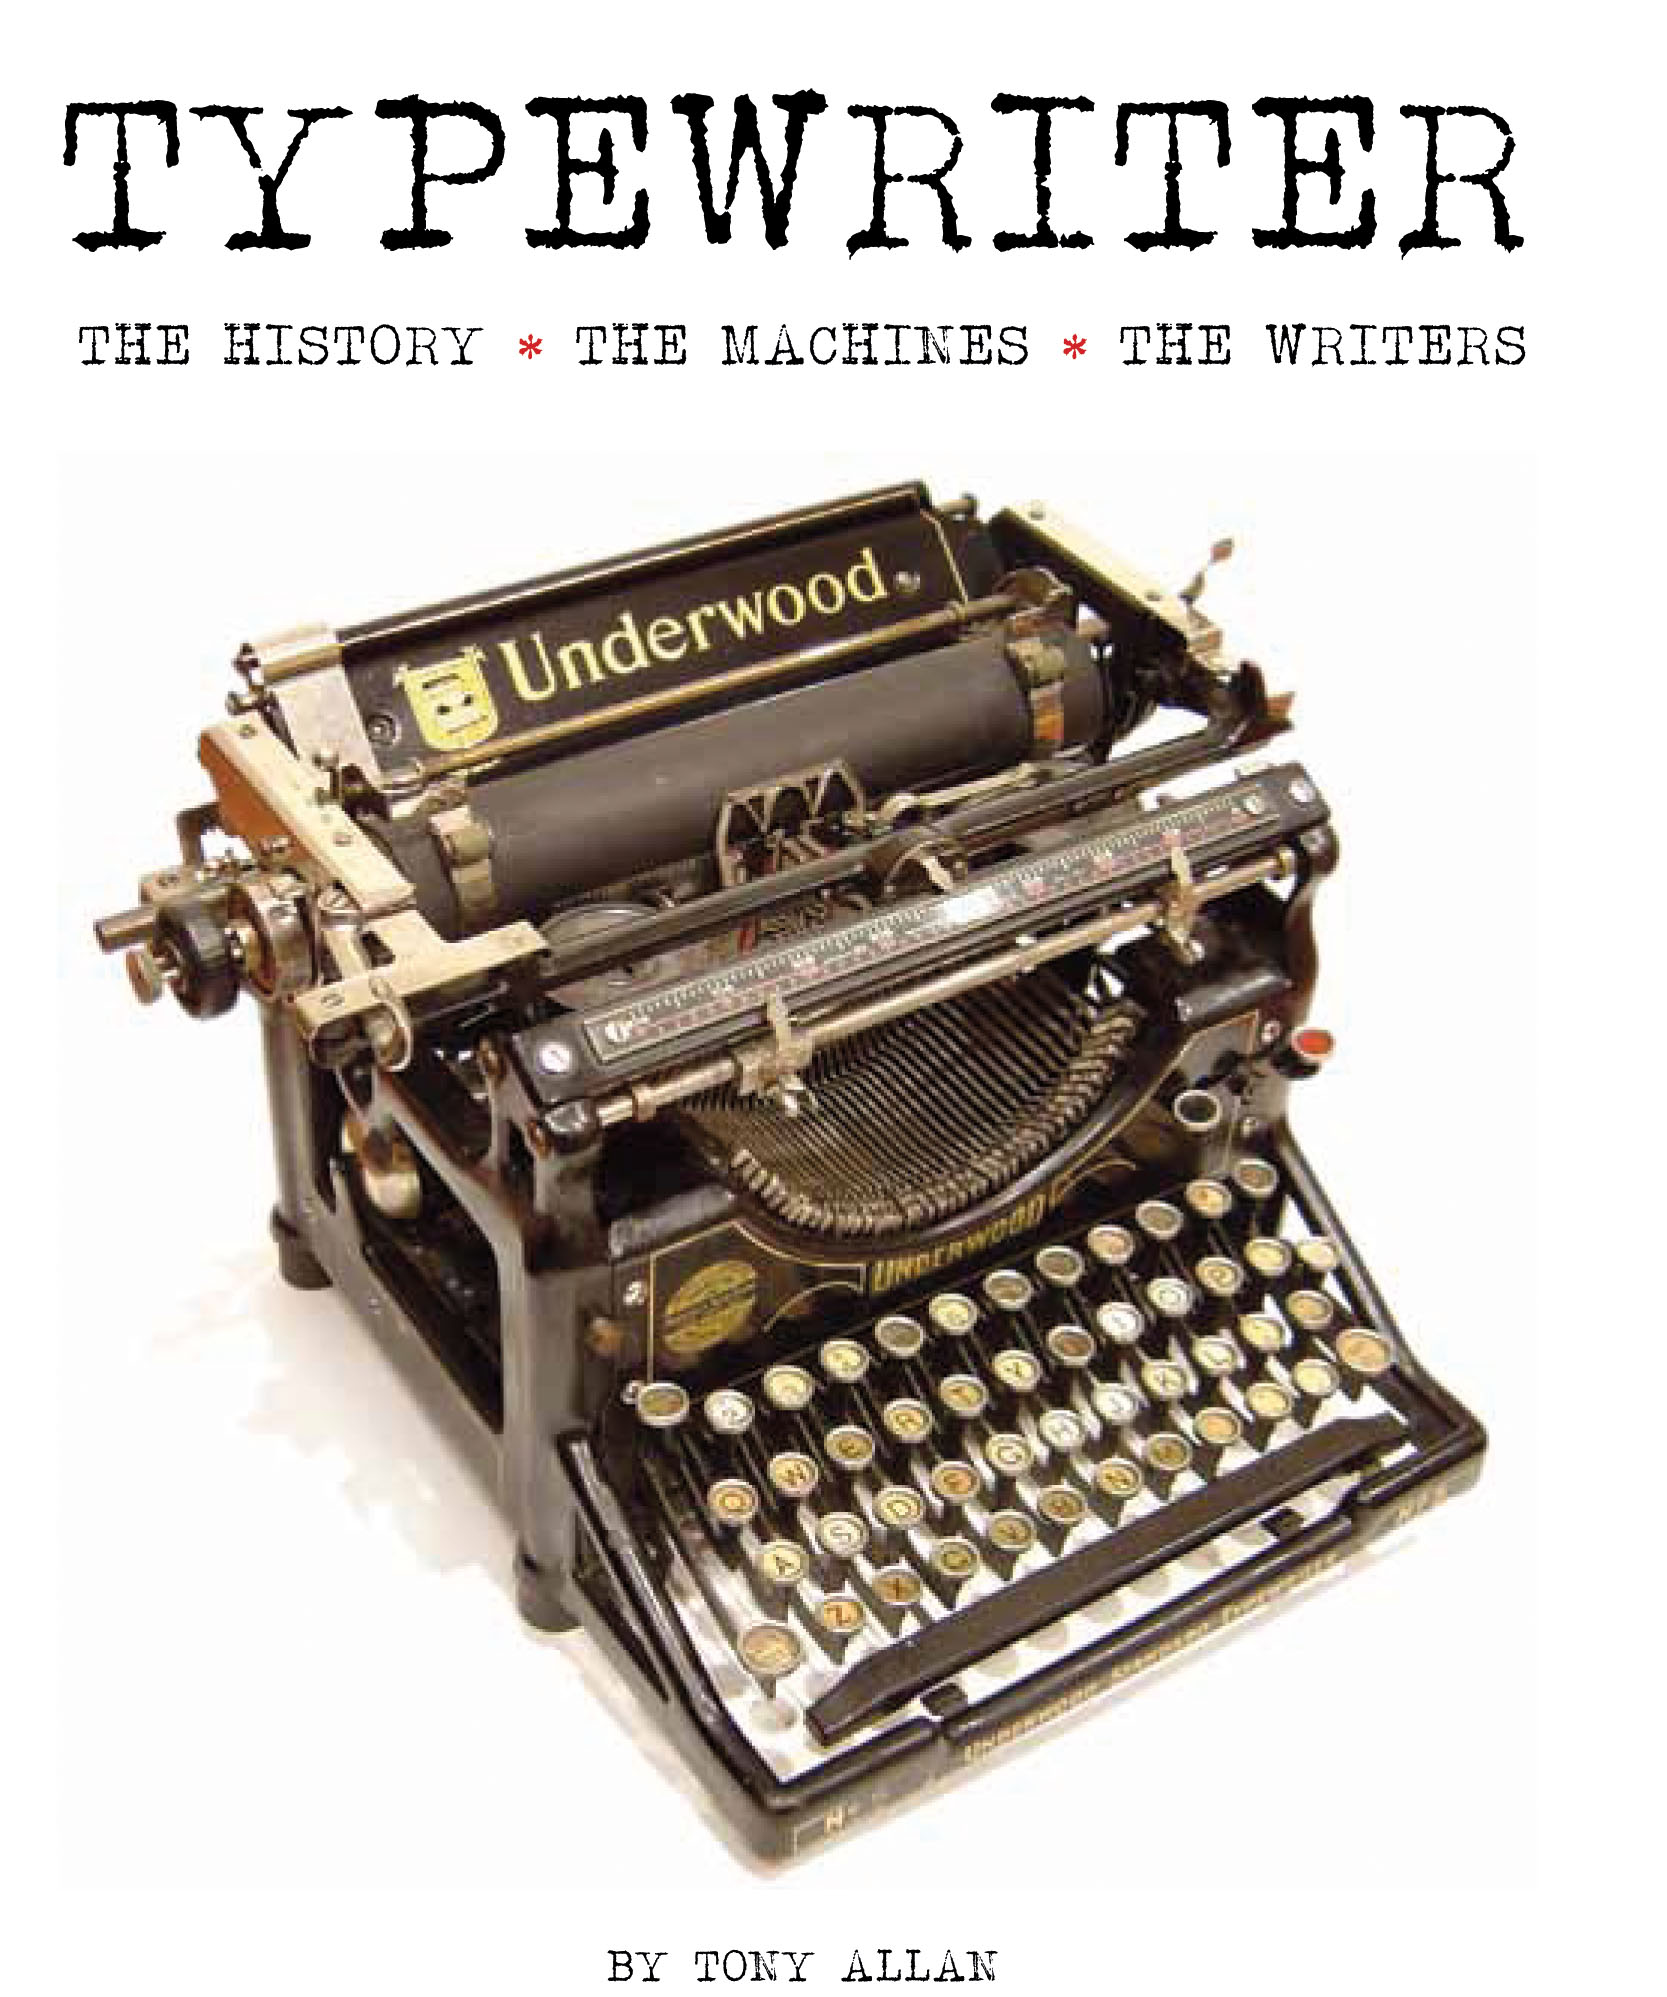 original typewriter